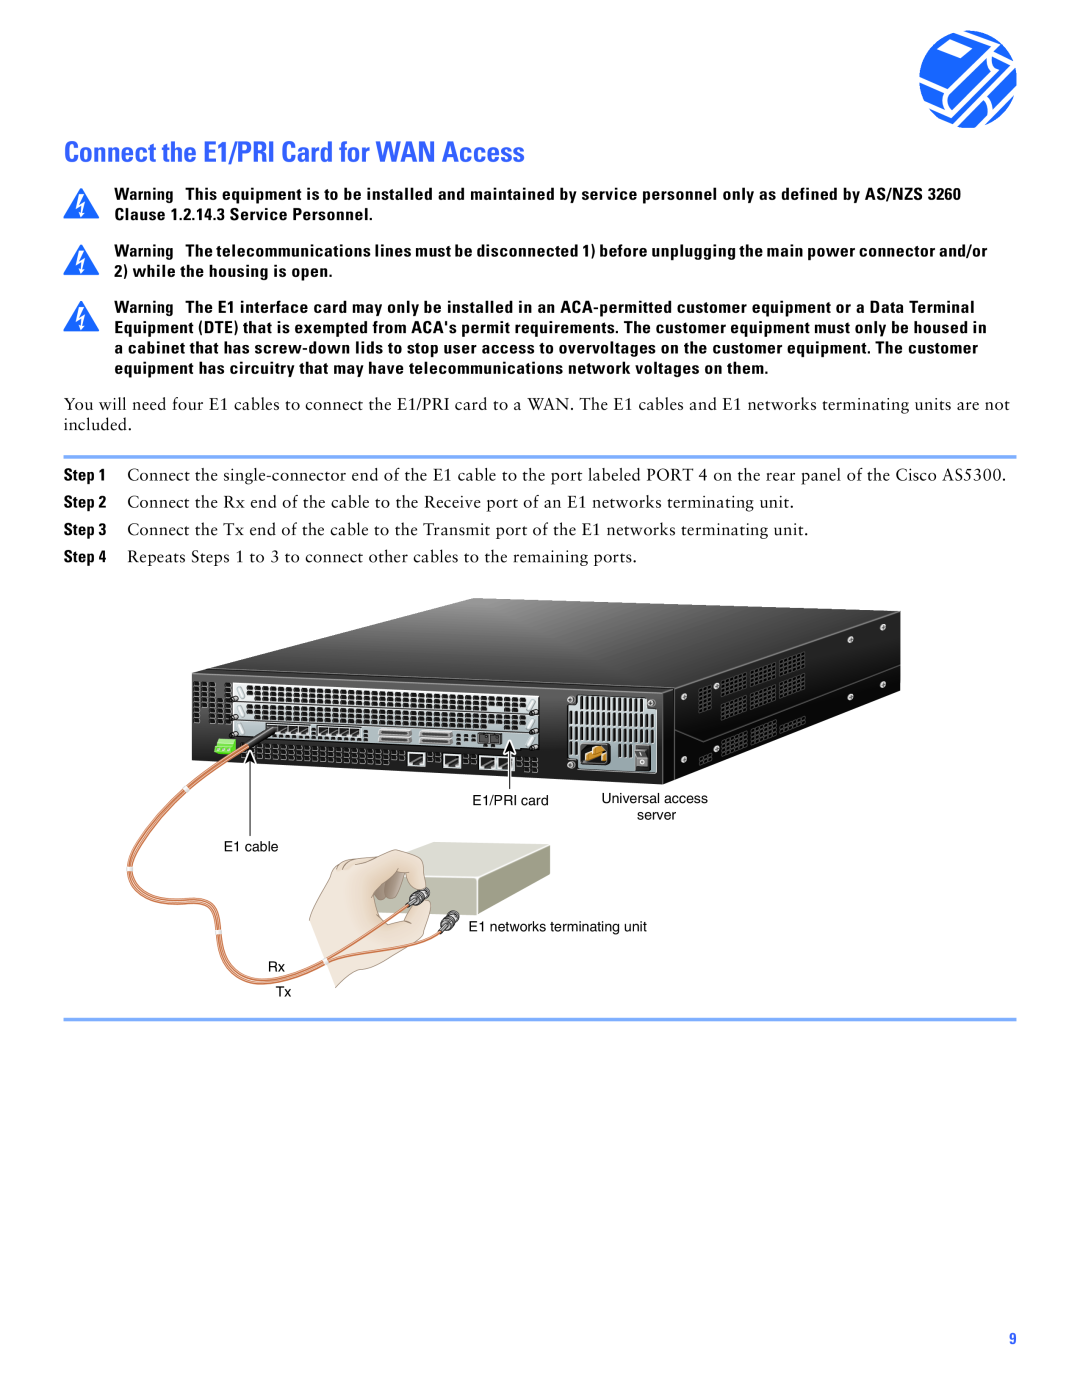 Cisco Systems Cisco AS5300 manual Connect the E1/PRI Card for WAN Access, Universal access 